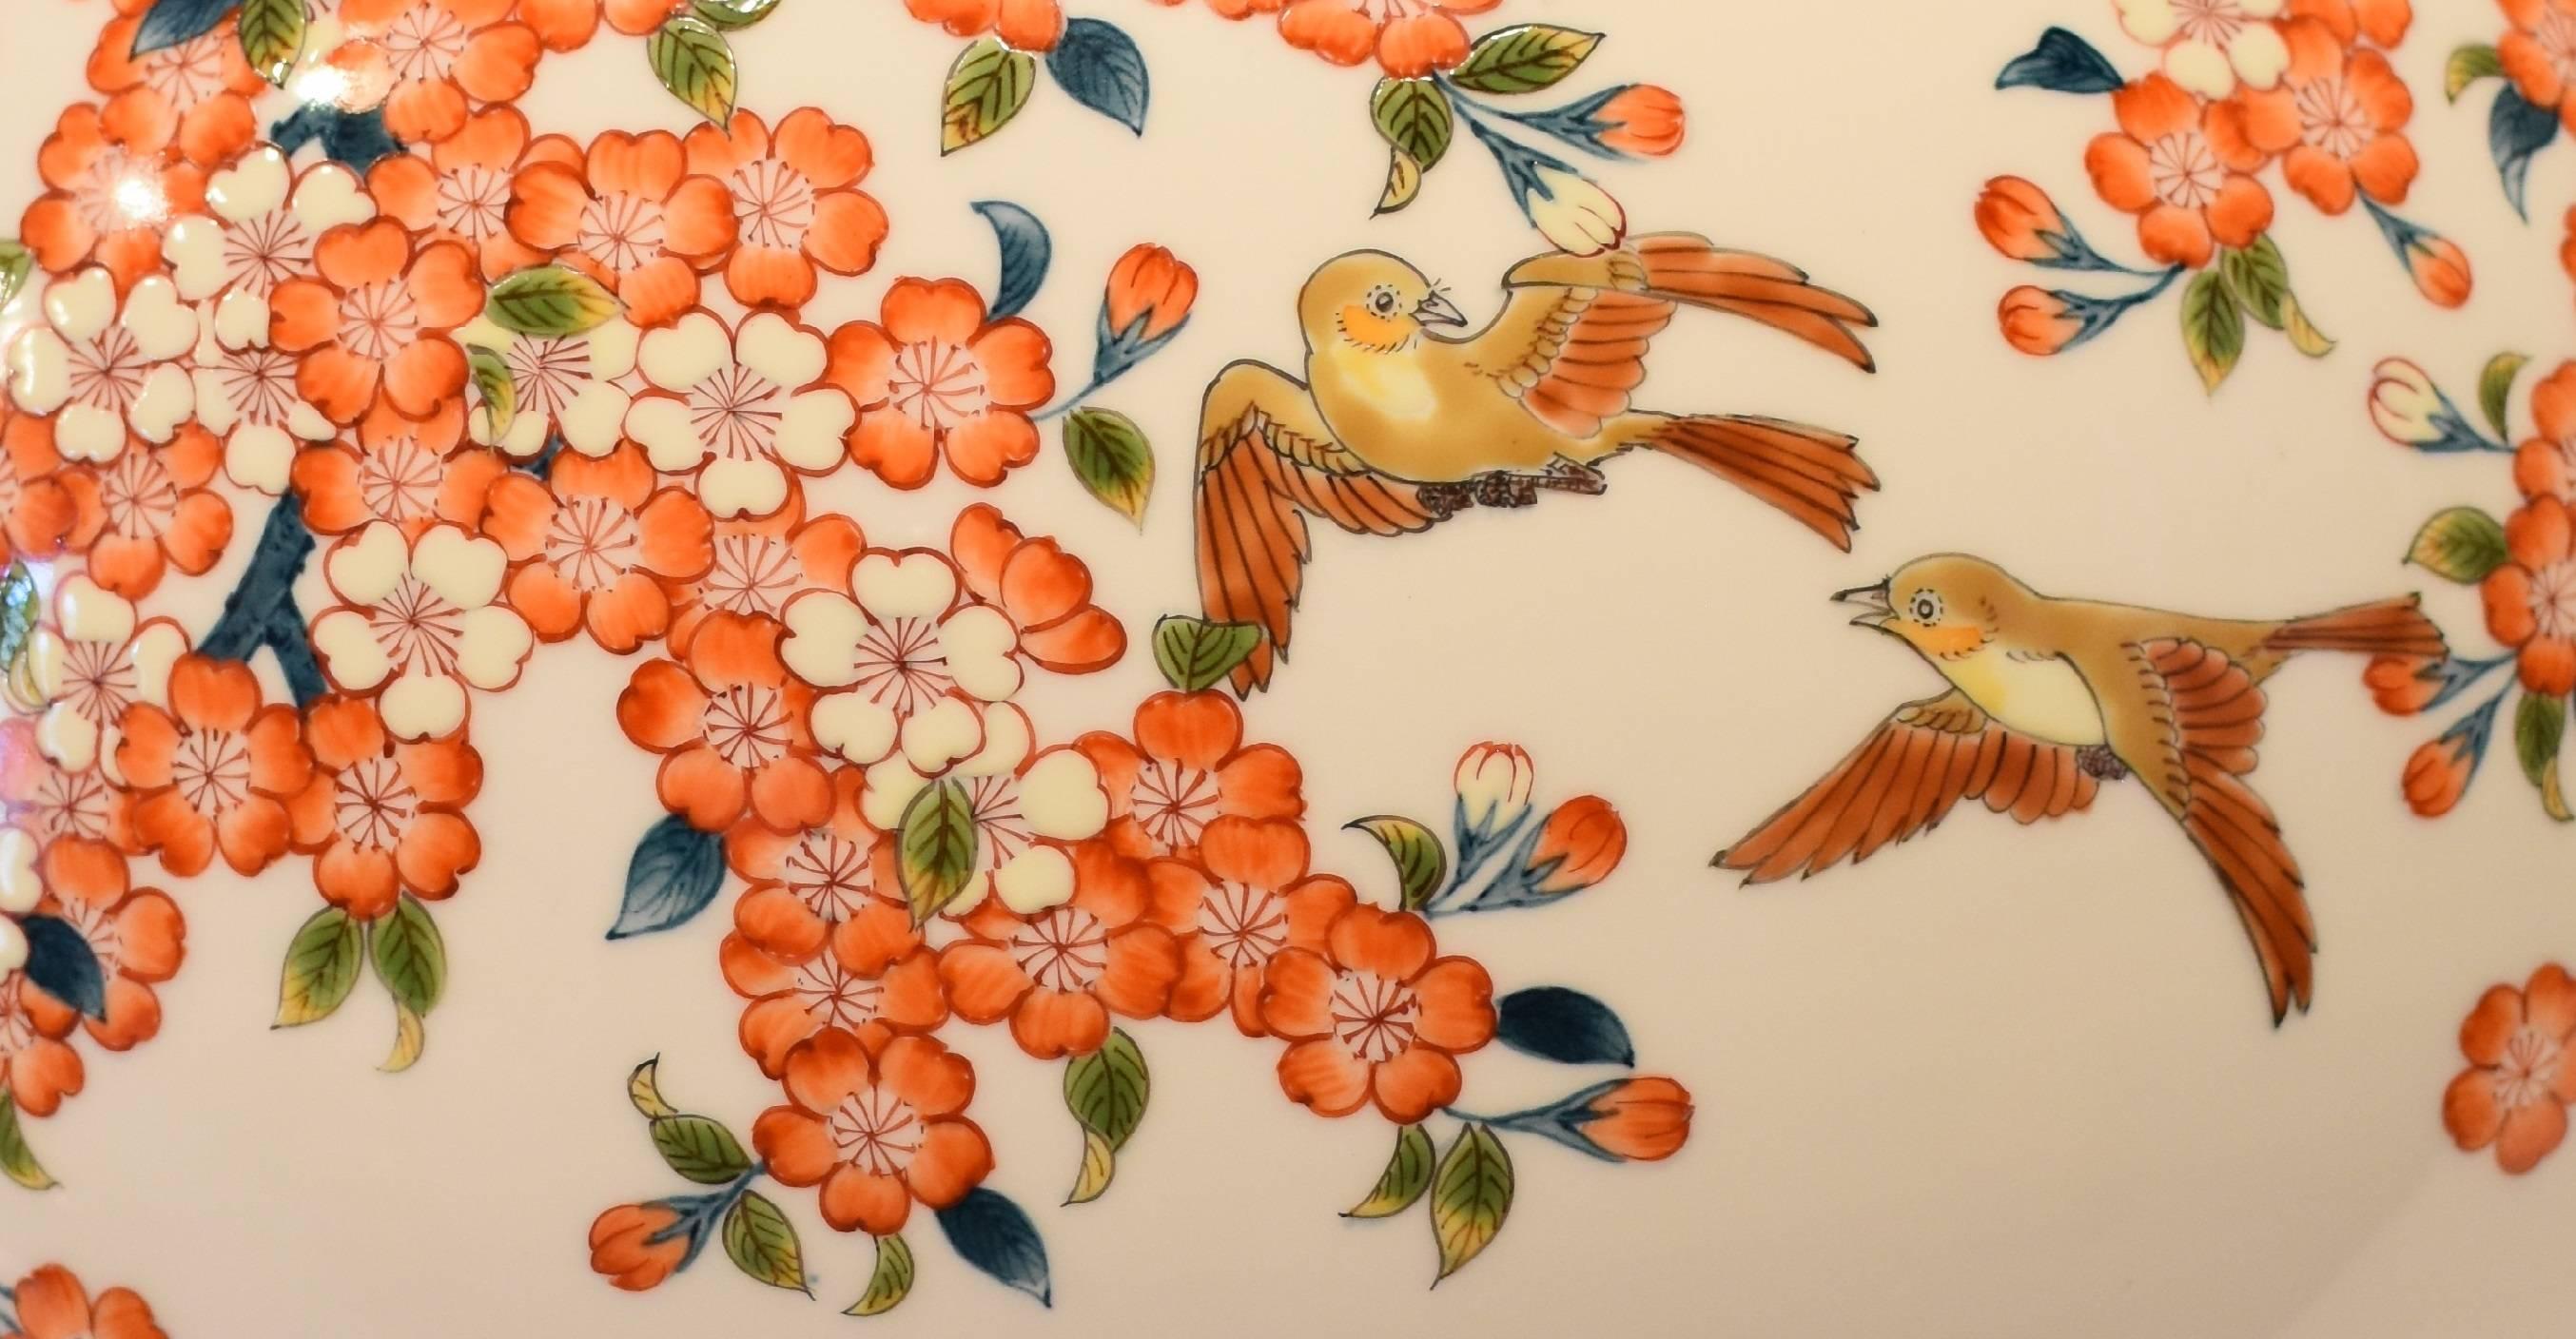 Porcelain Vase by Japanese Master Artist (Cherry Blossom Series) 1